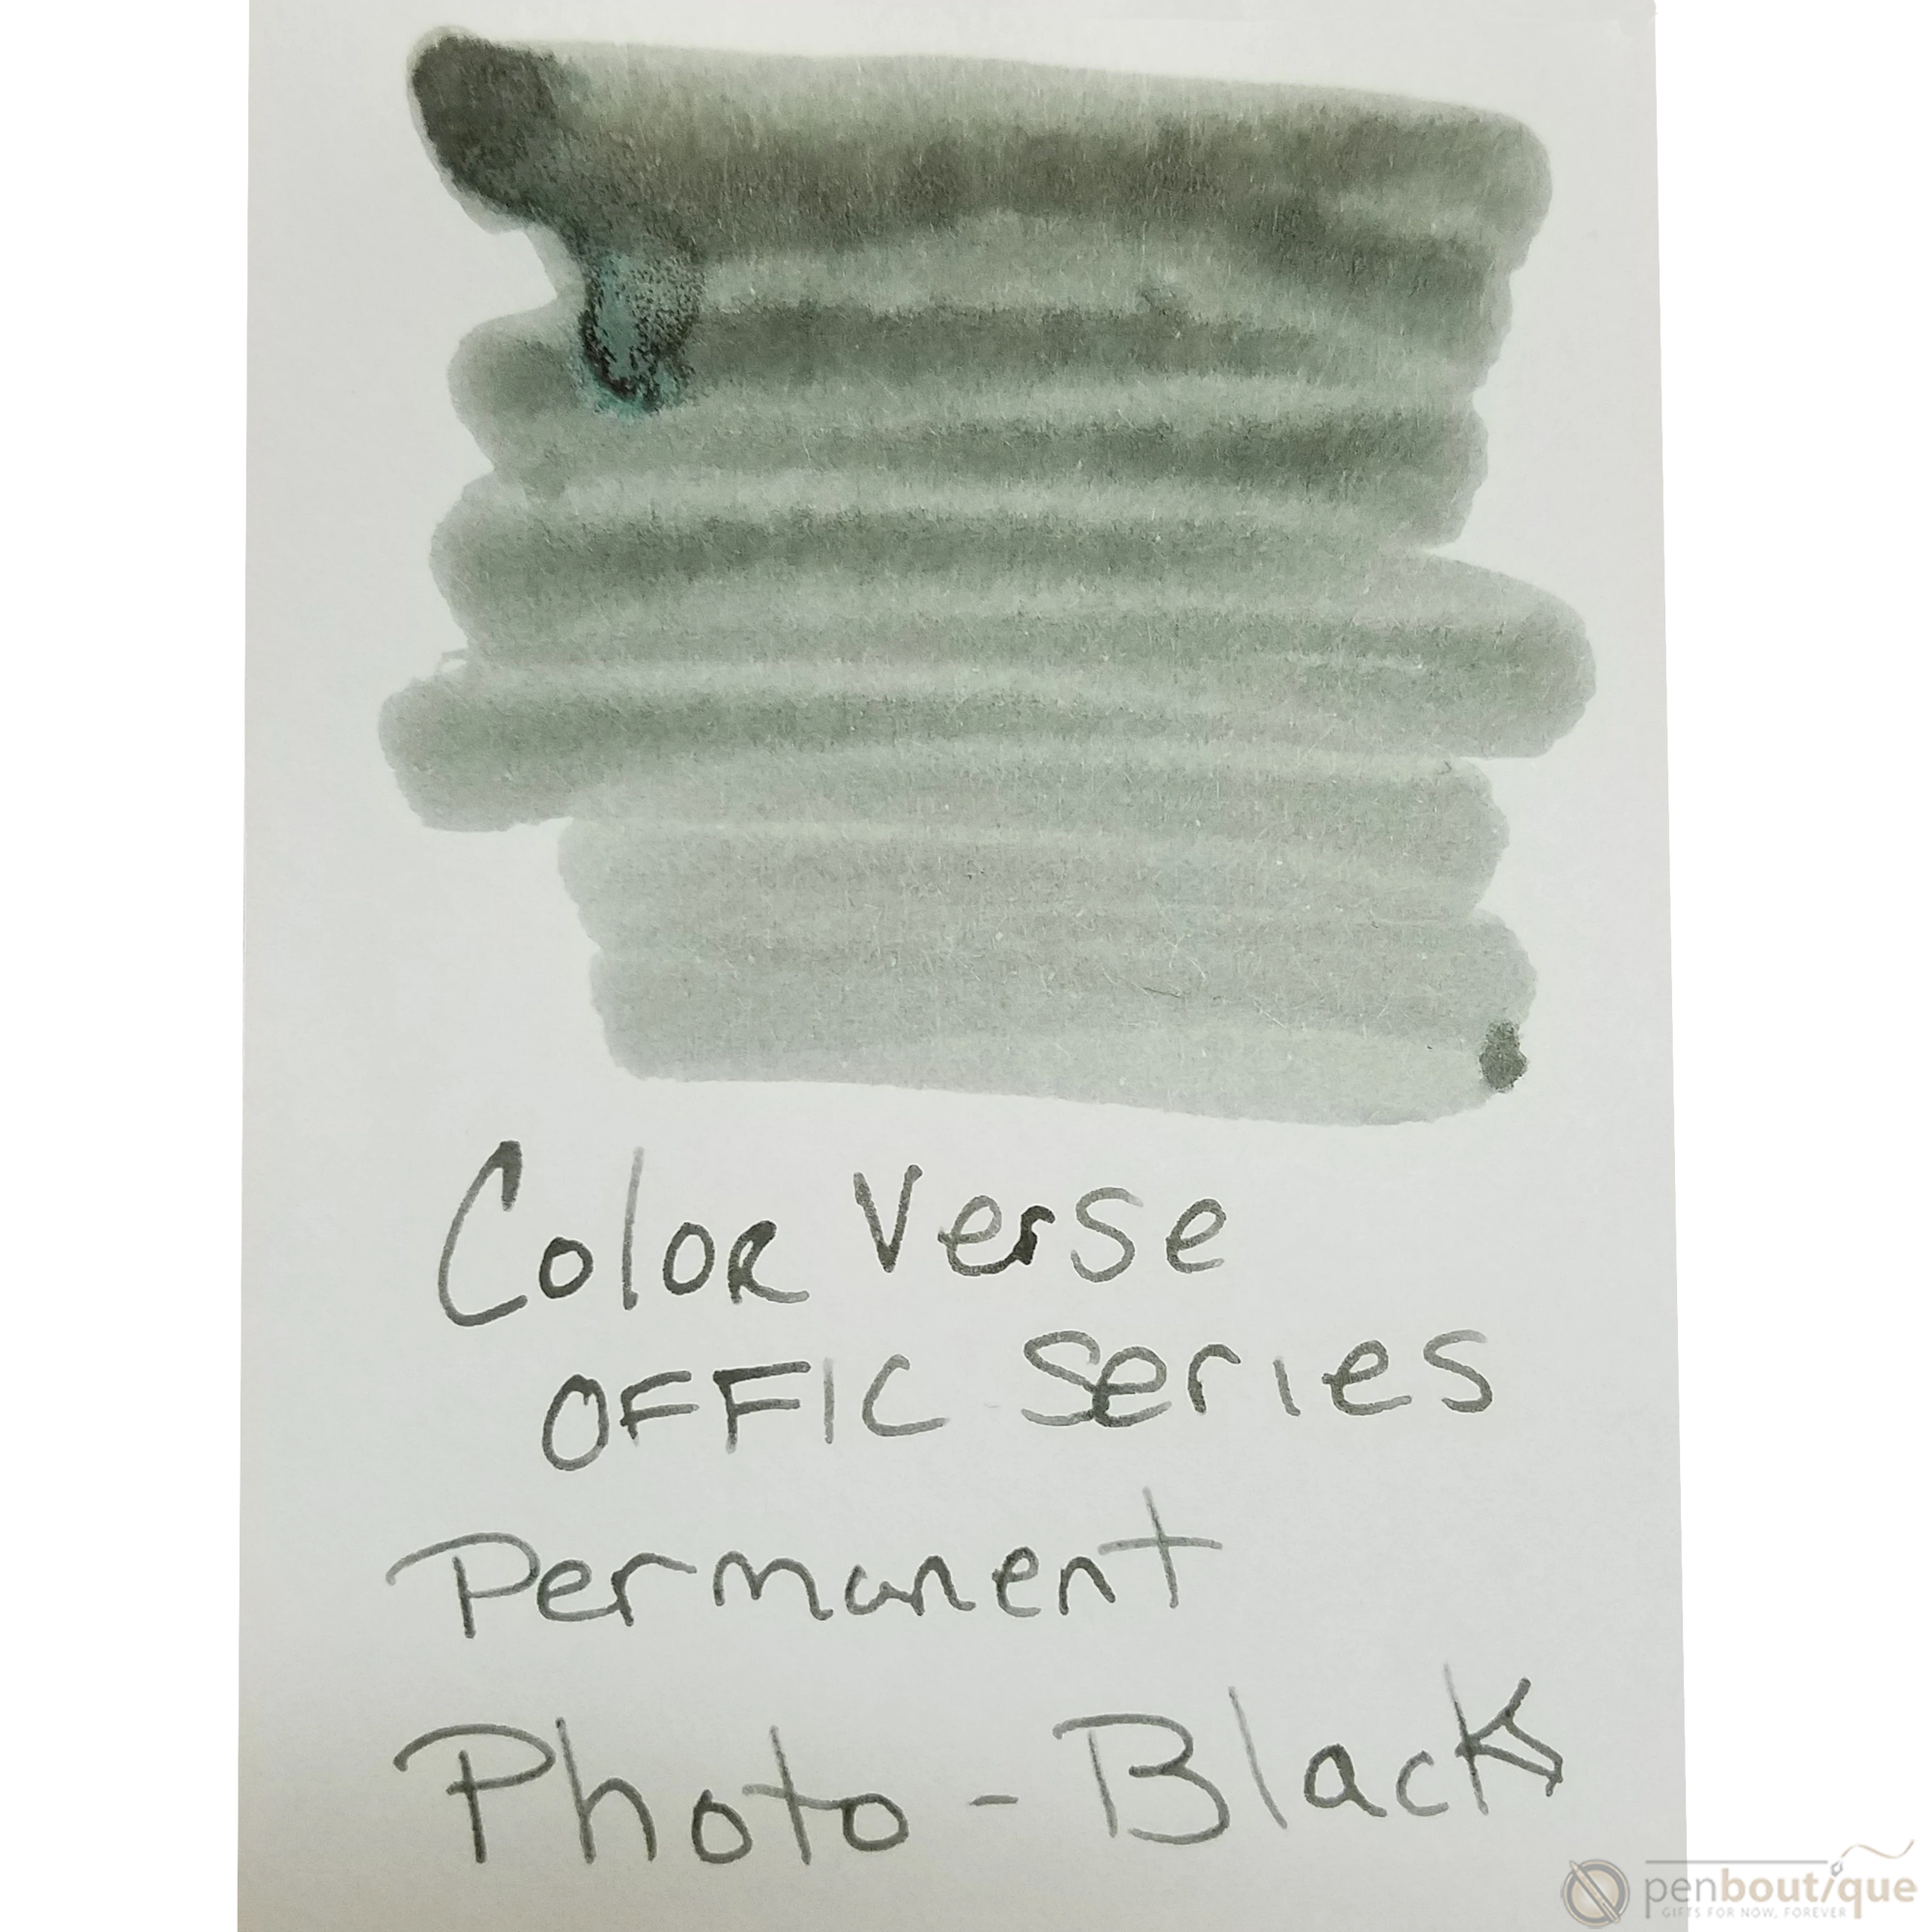 Colorverse Ink - Office Series - Permanent Photo Black - 30ml-Pen Boutique Ltd